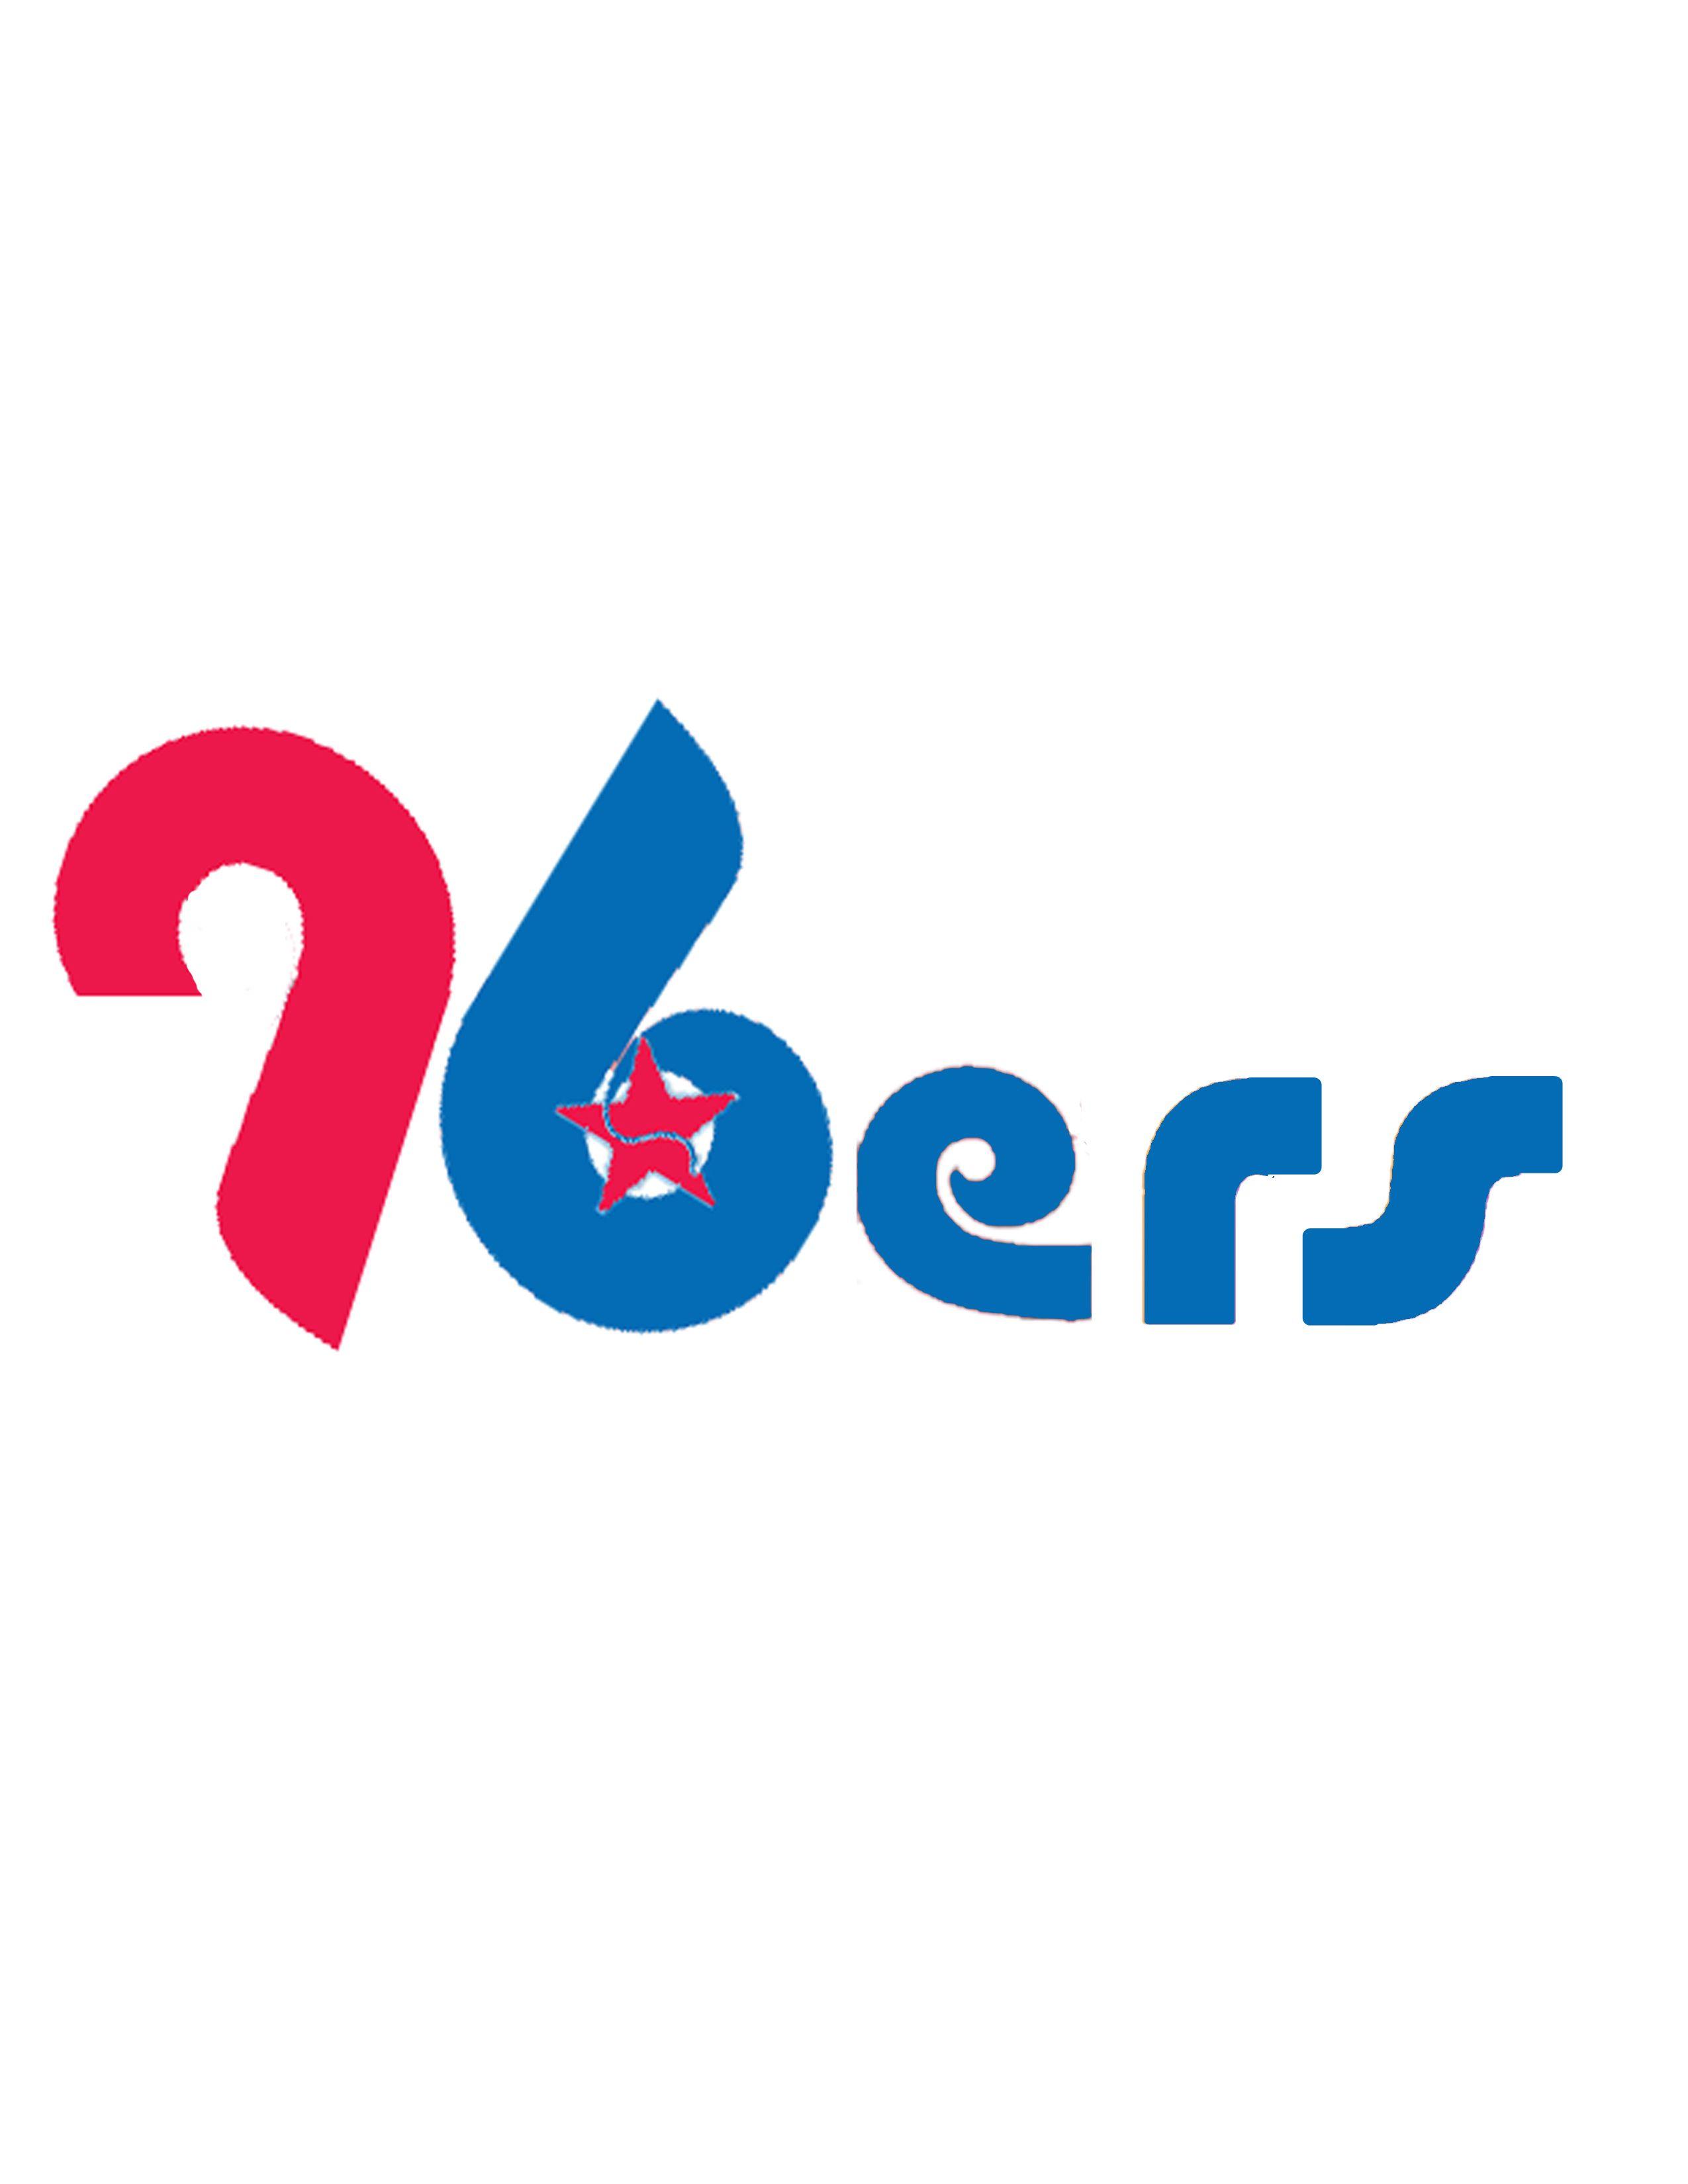 Sixers Logo - Philadelphia 76ers Logo Mashups